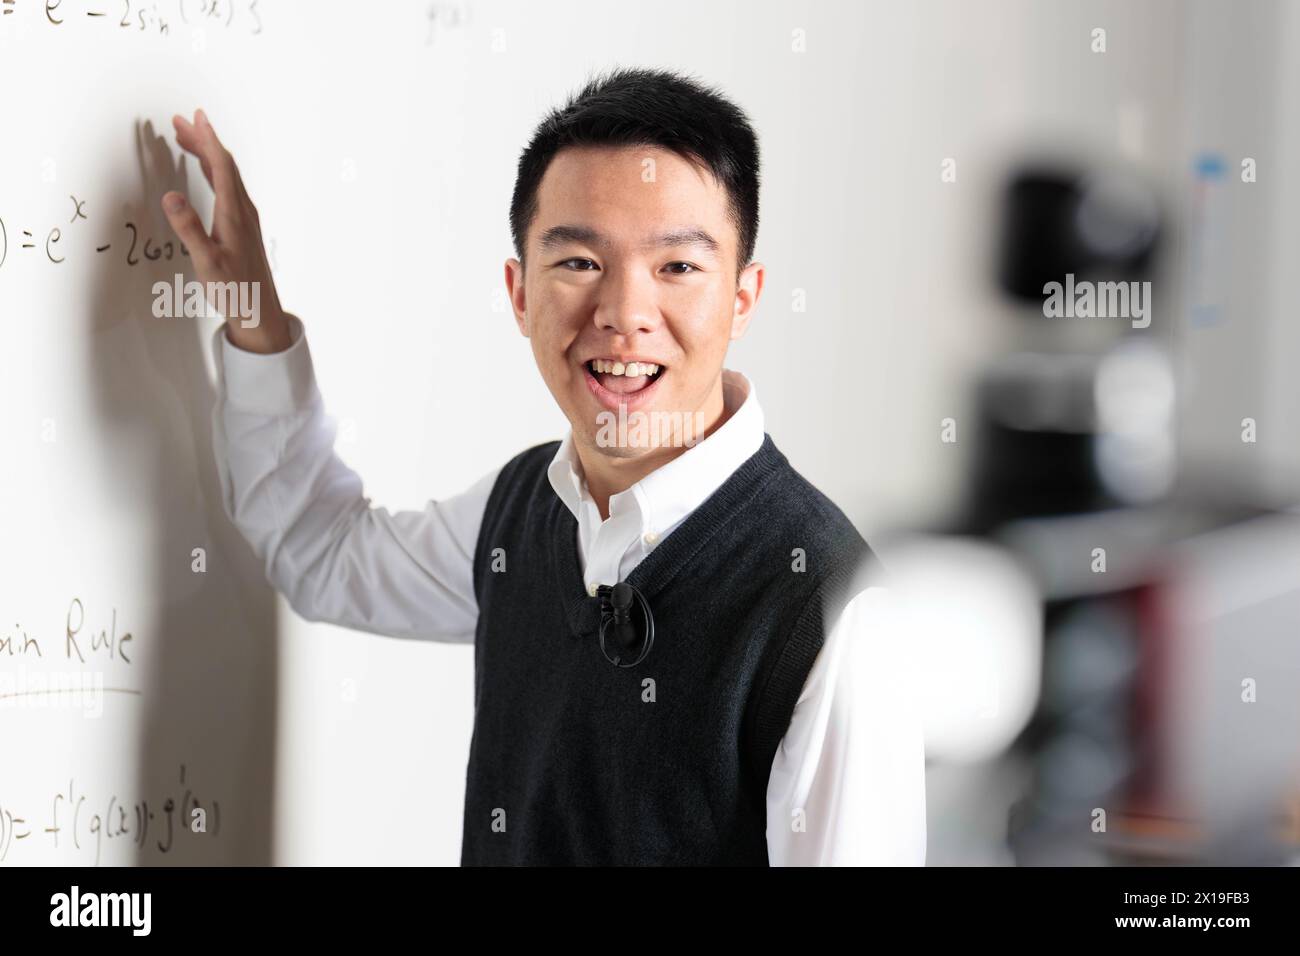 Un uomo in abito formale con una camicia e maniche arrotolate è felice di fare gesti sulla lavagna bianca, con un sorriso sul viso e il pollice rivolto verso l'alto Foto Stock